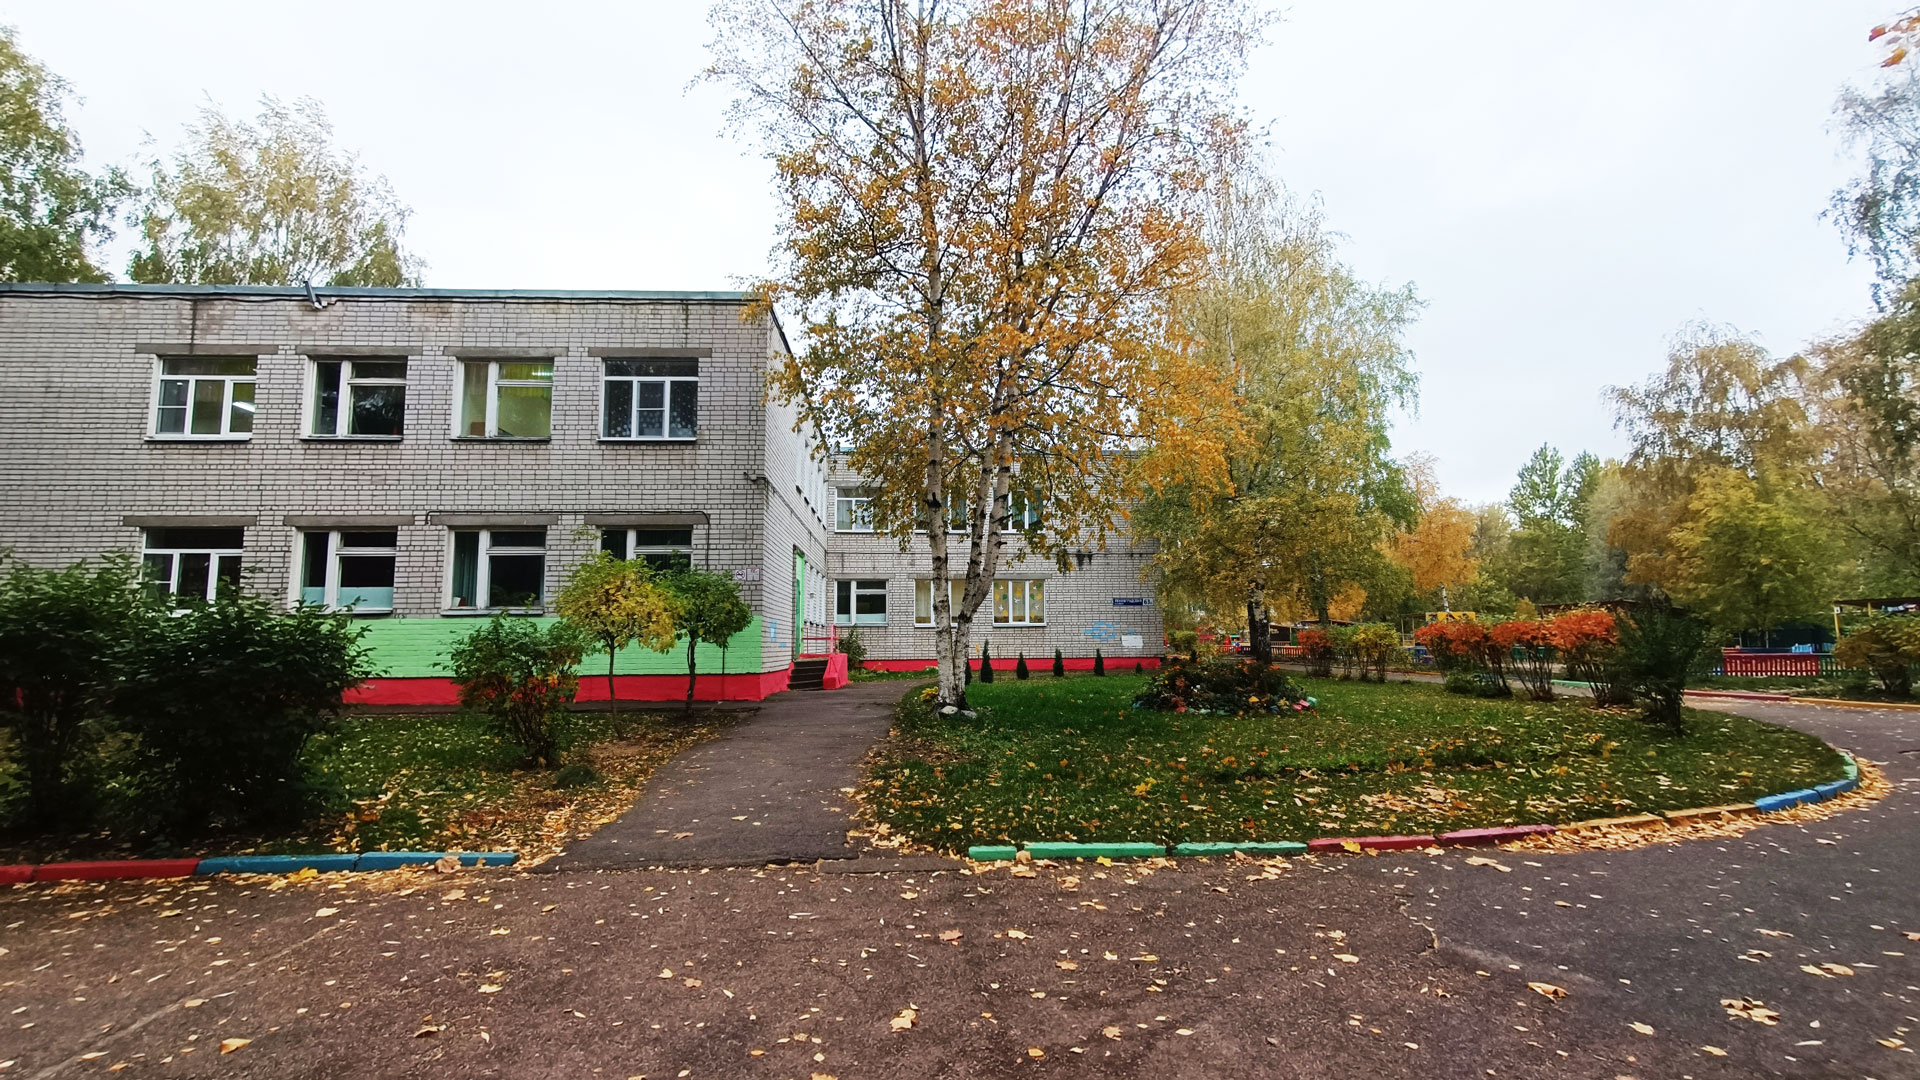 Детский сад 193 Ярославль: общий вид здания.